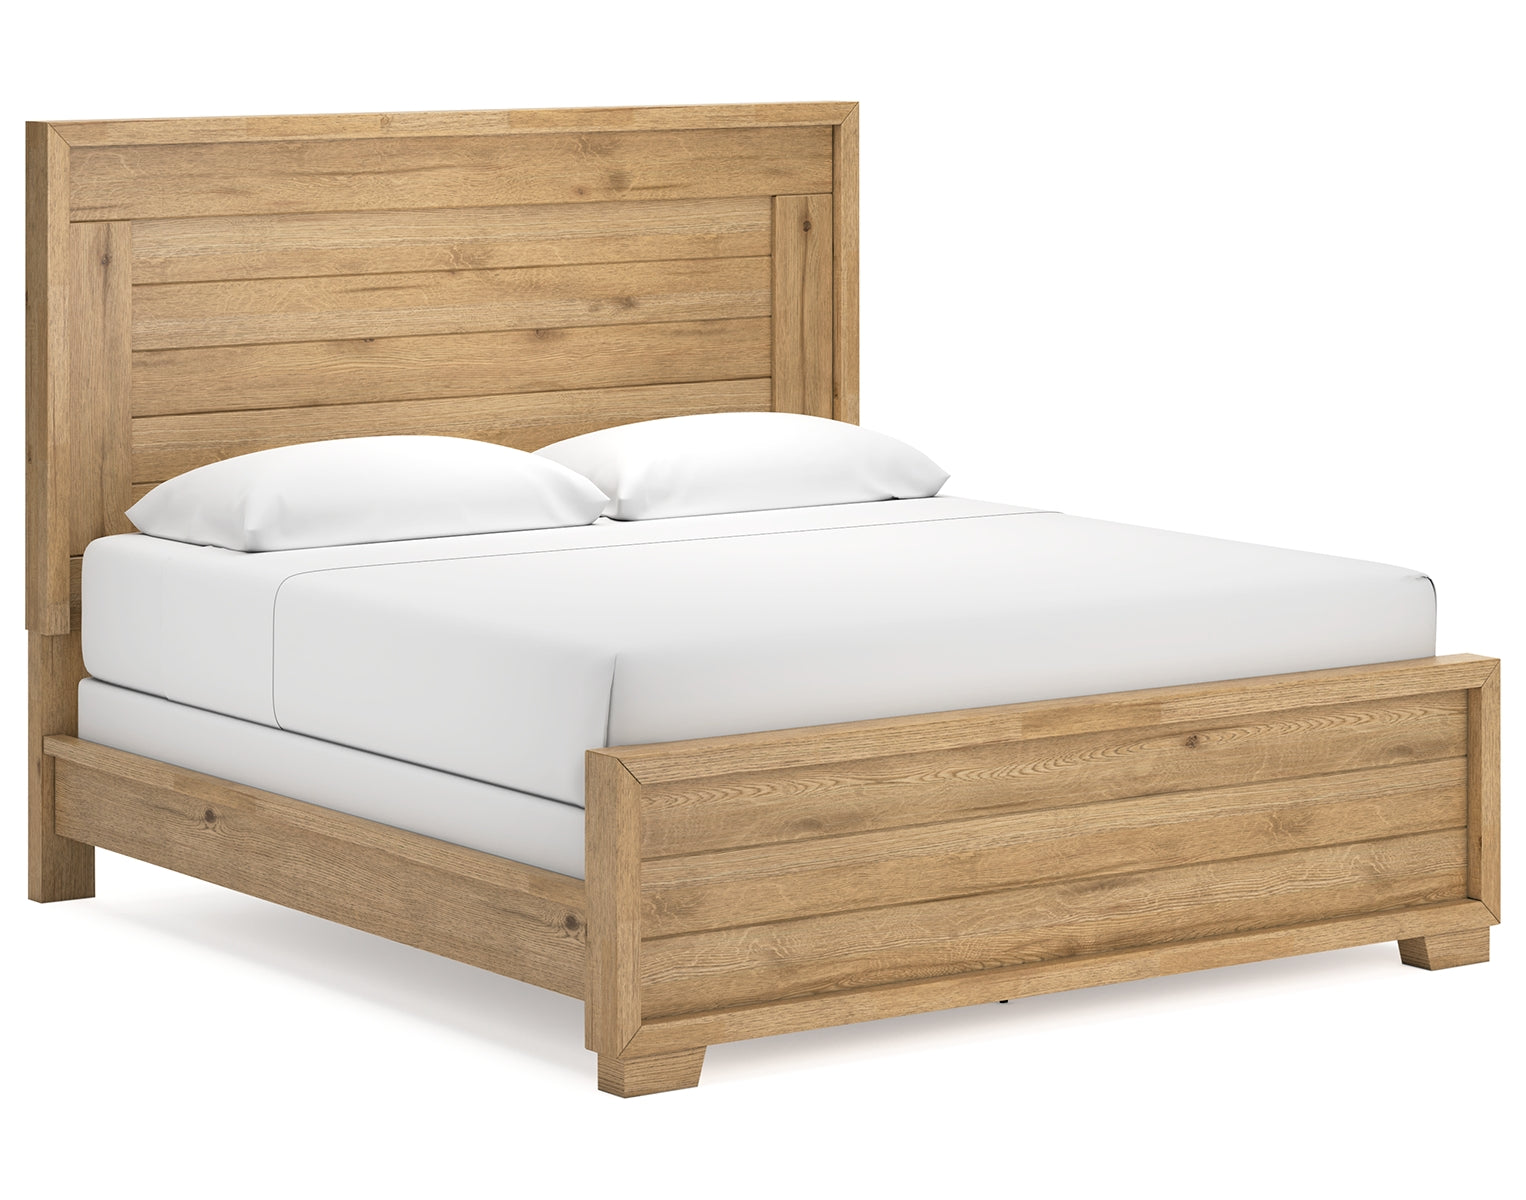 Galliden King Panel Bed with 2 Nightstands